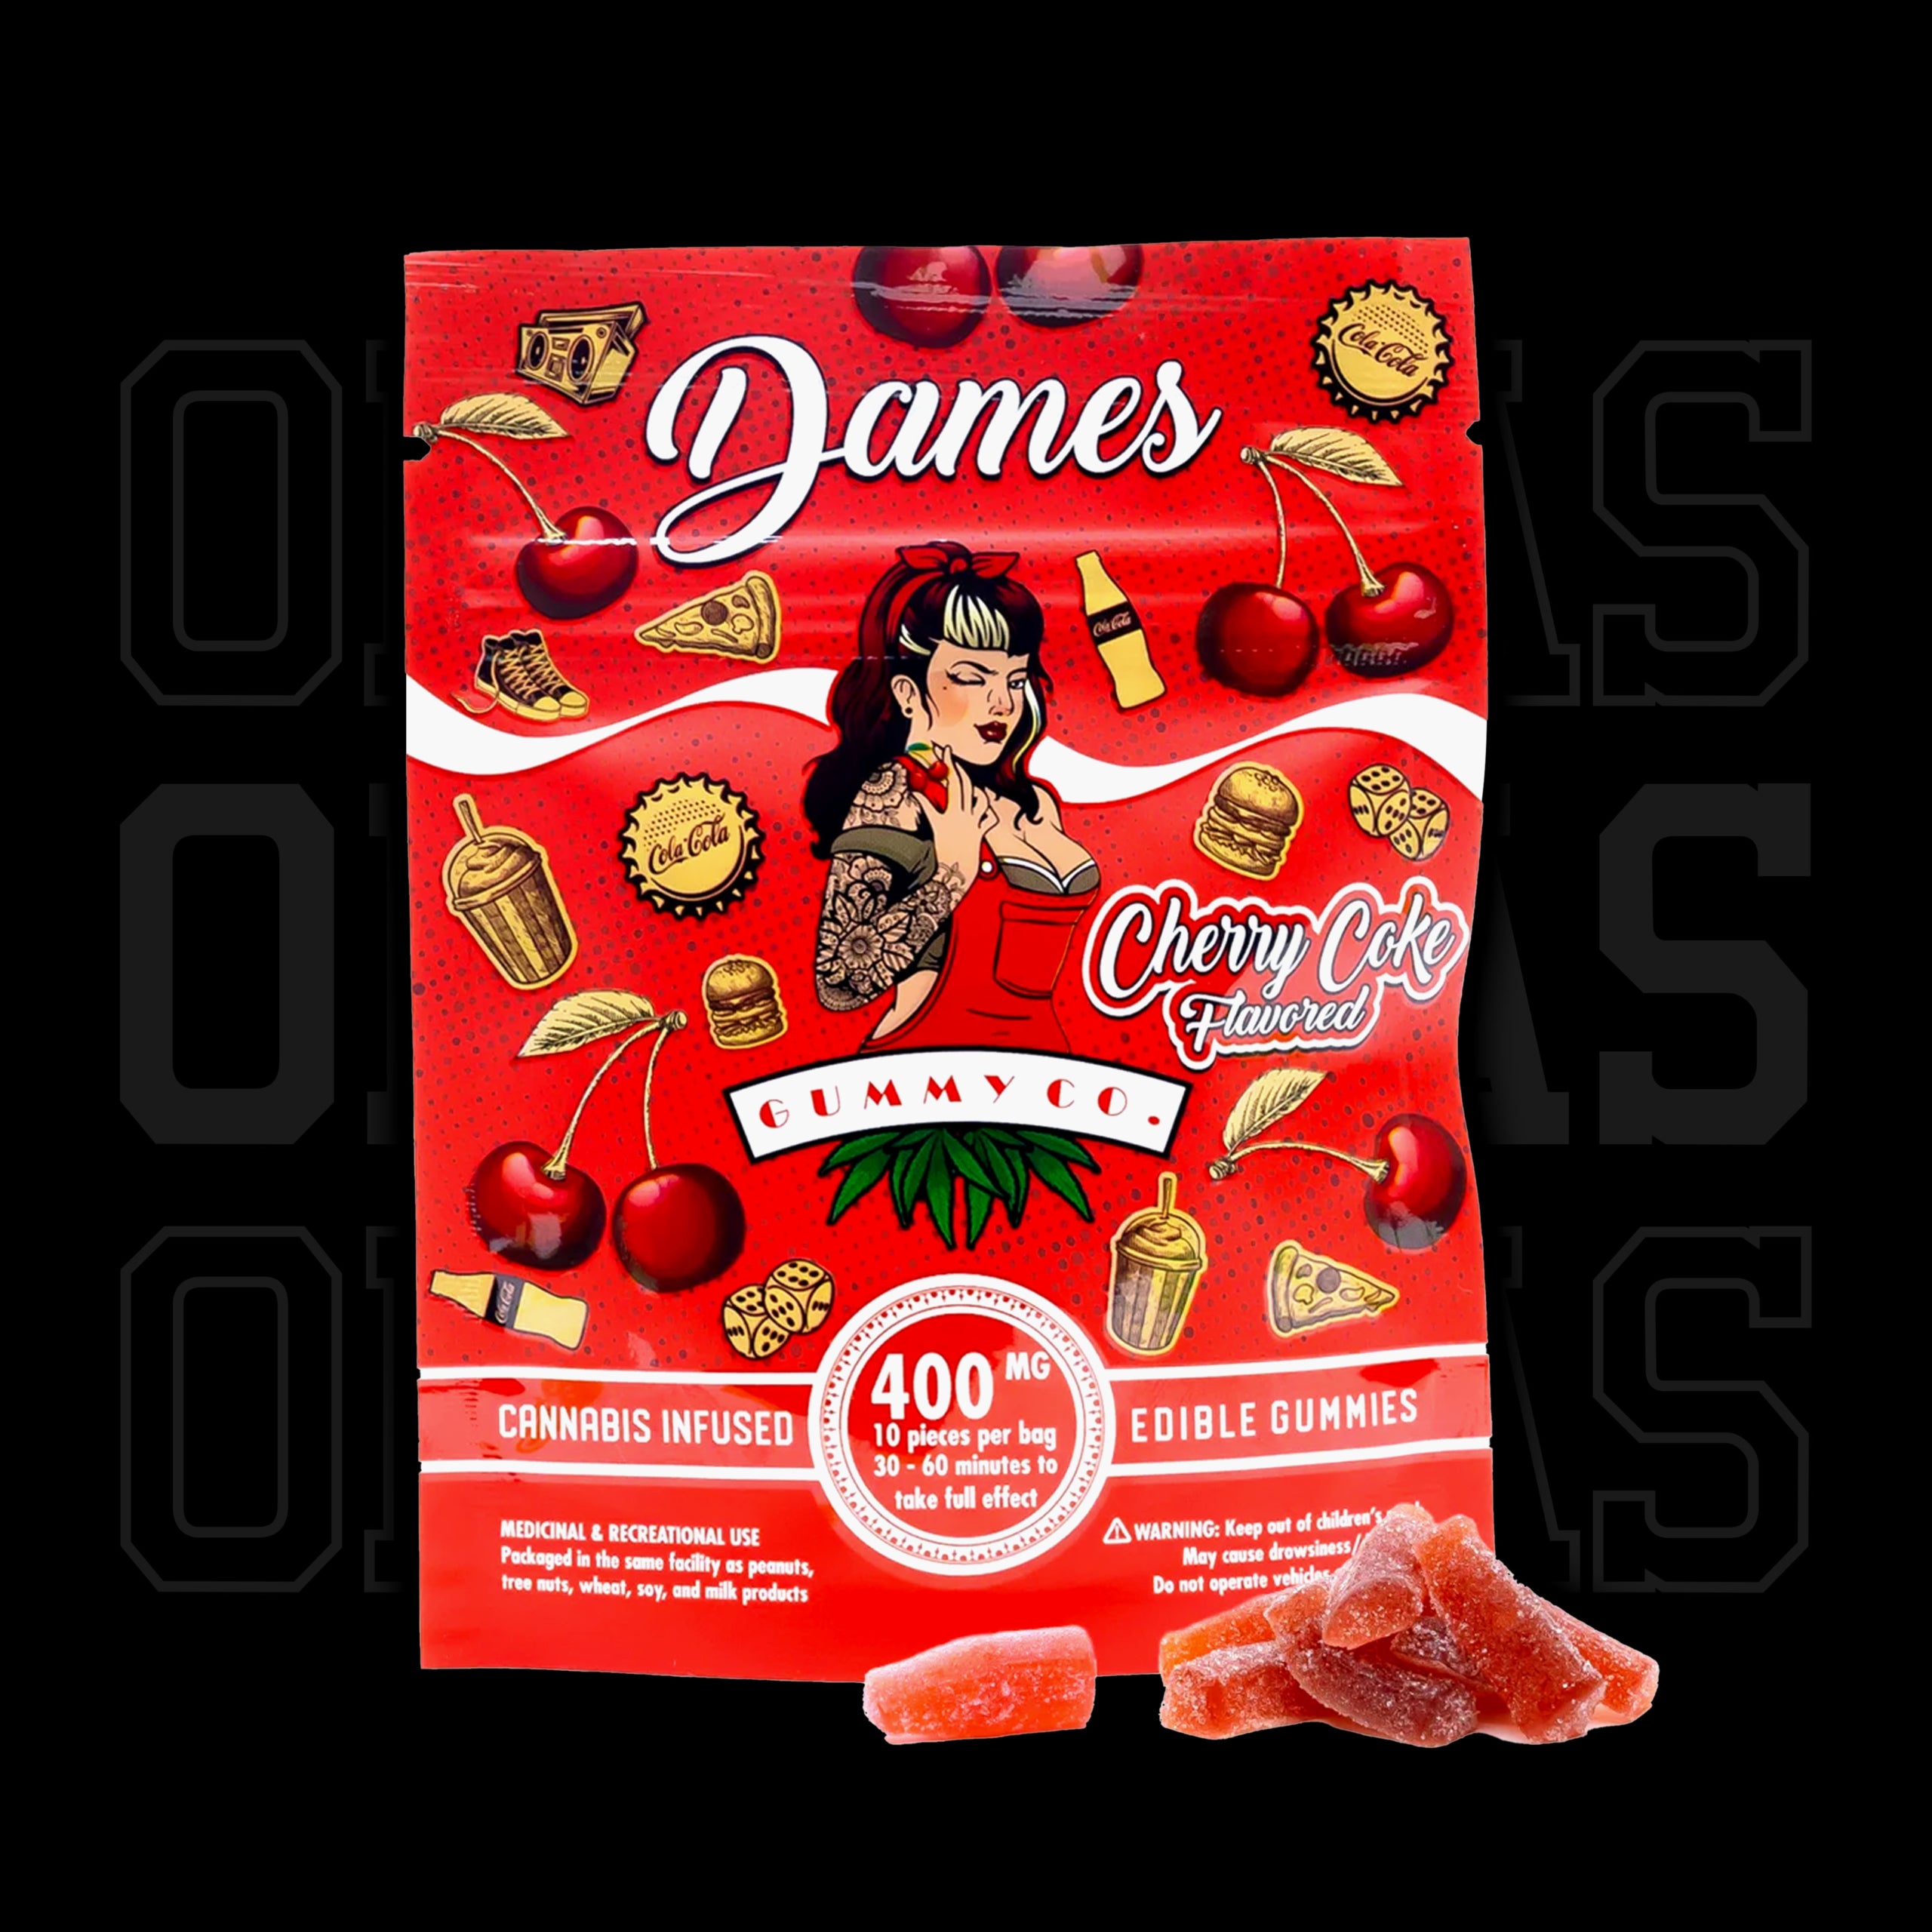 Dames-CherryCoke-01